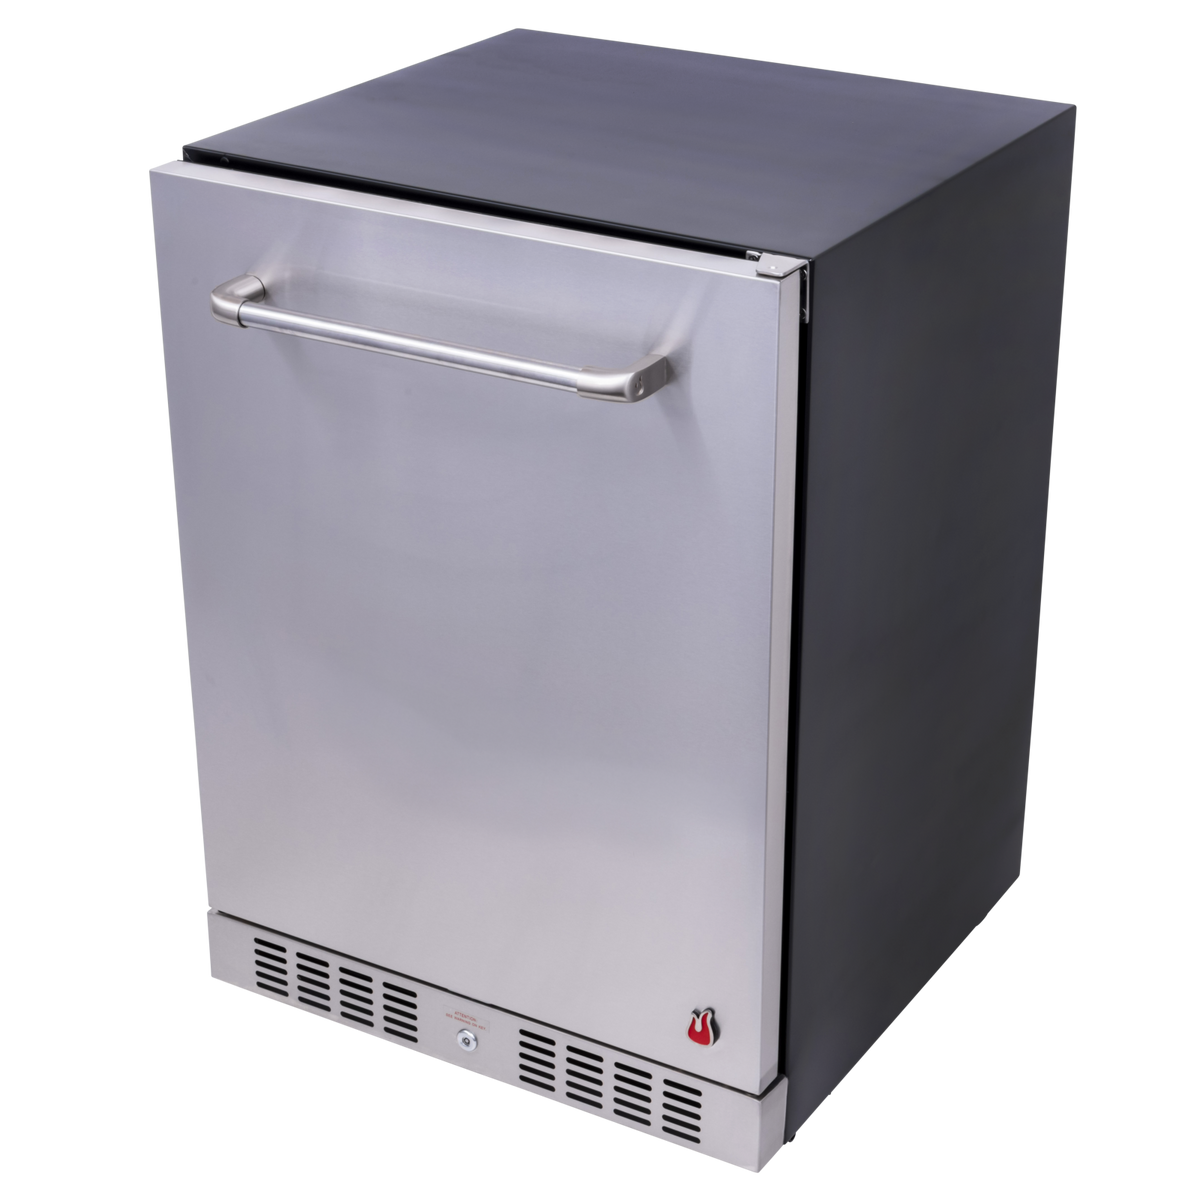 Medallion Series™ Built-In Refrigerator